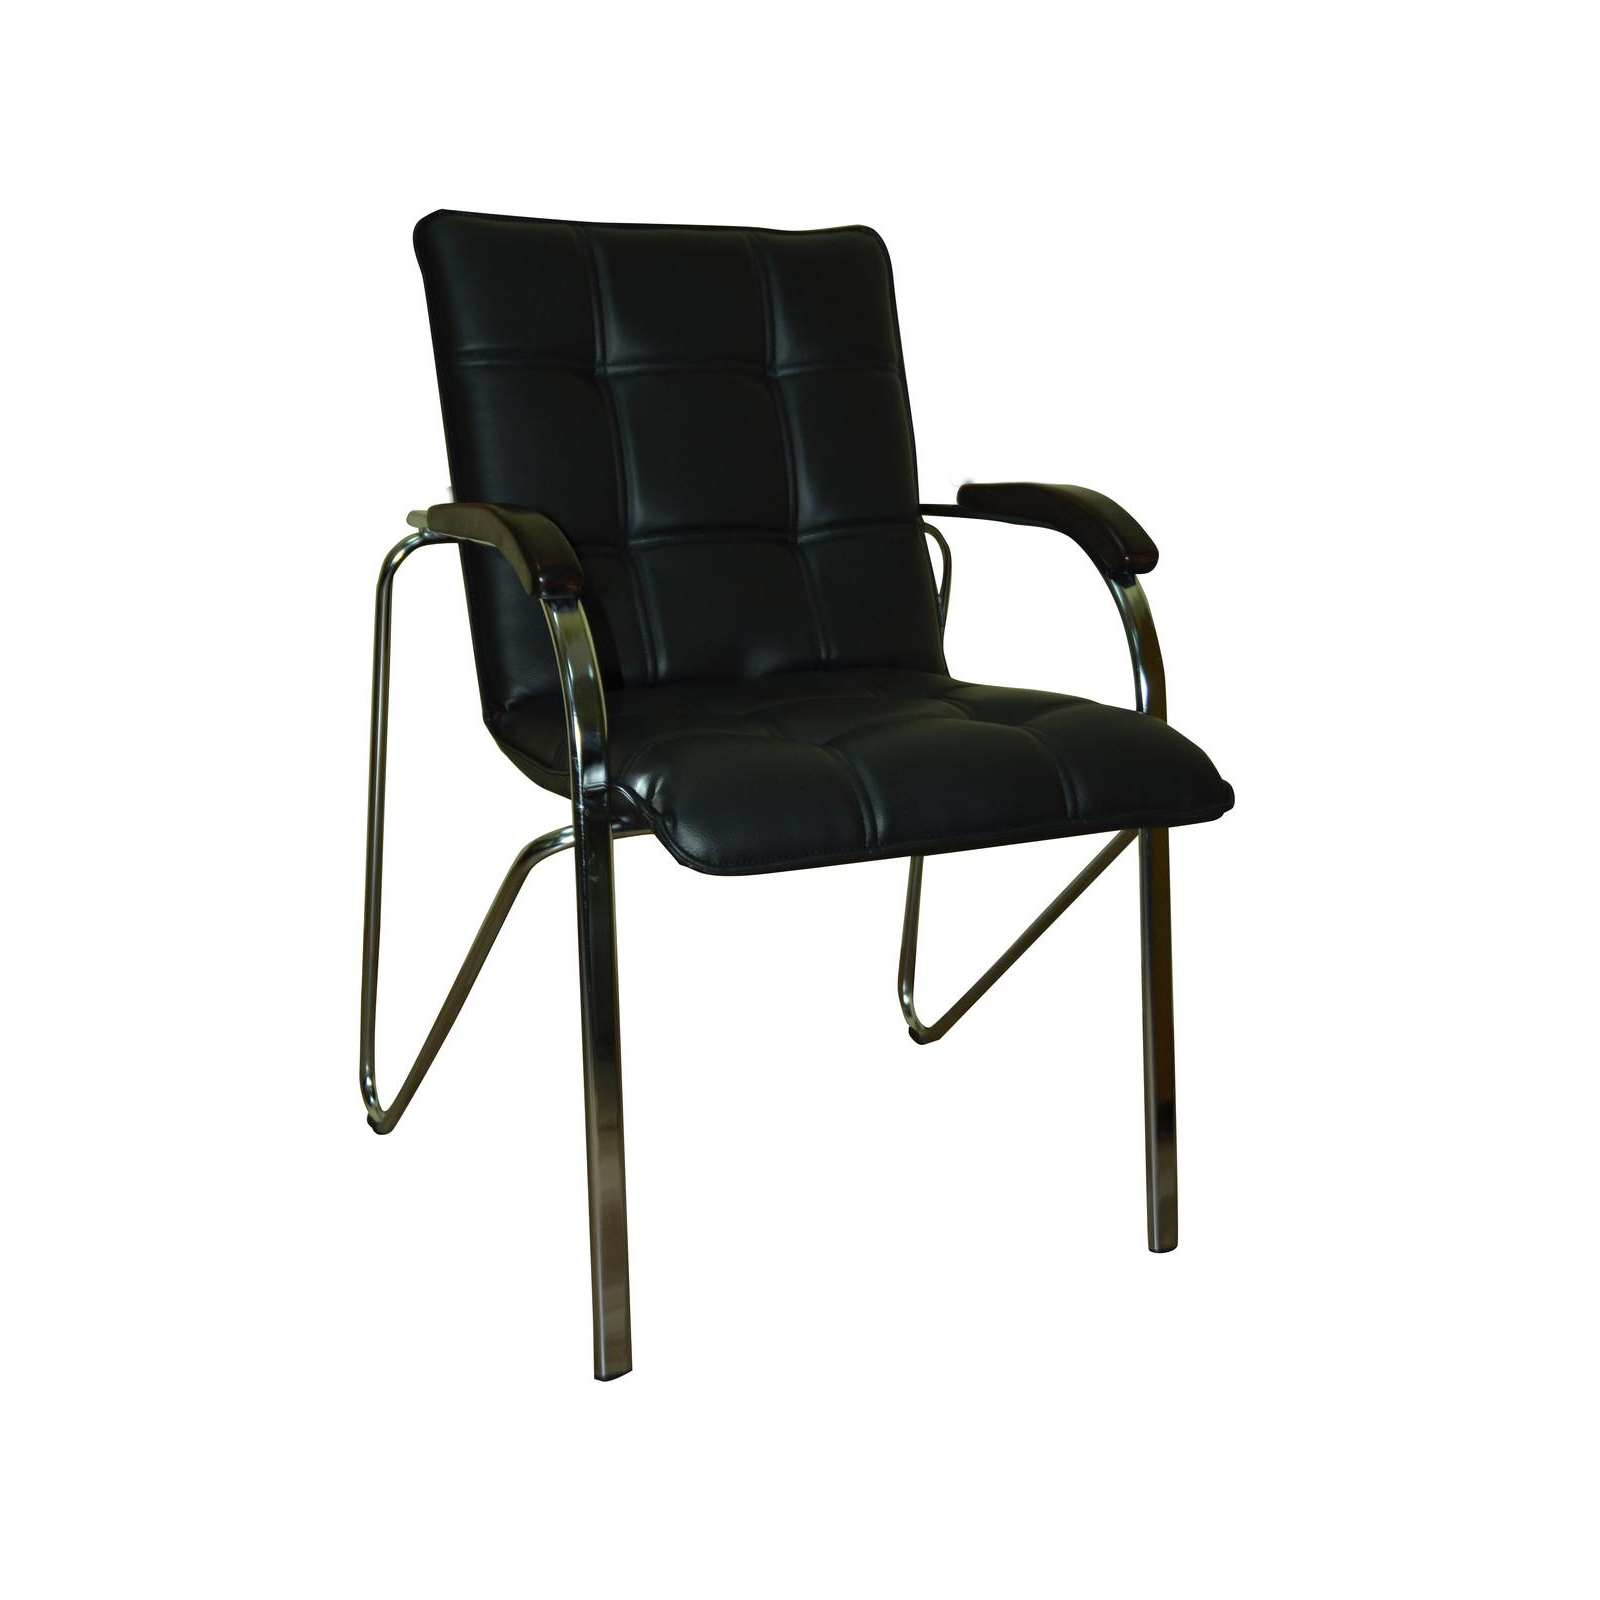 Офісний стілець Примтекс плюс Stella Chrome Wood 1.031 CZ-3 (Stella chrome wood 1.031 CZ-3)